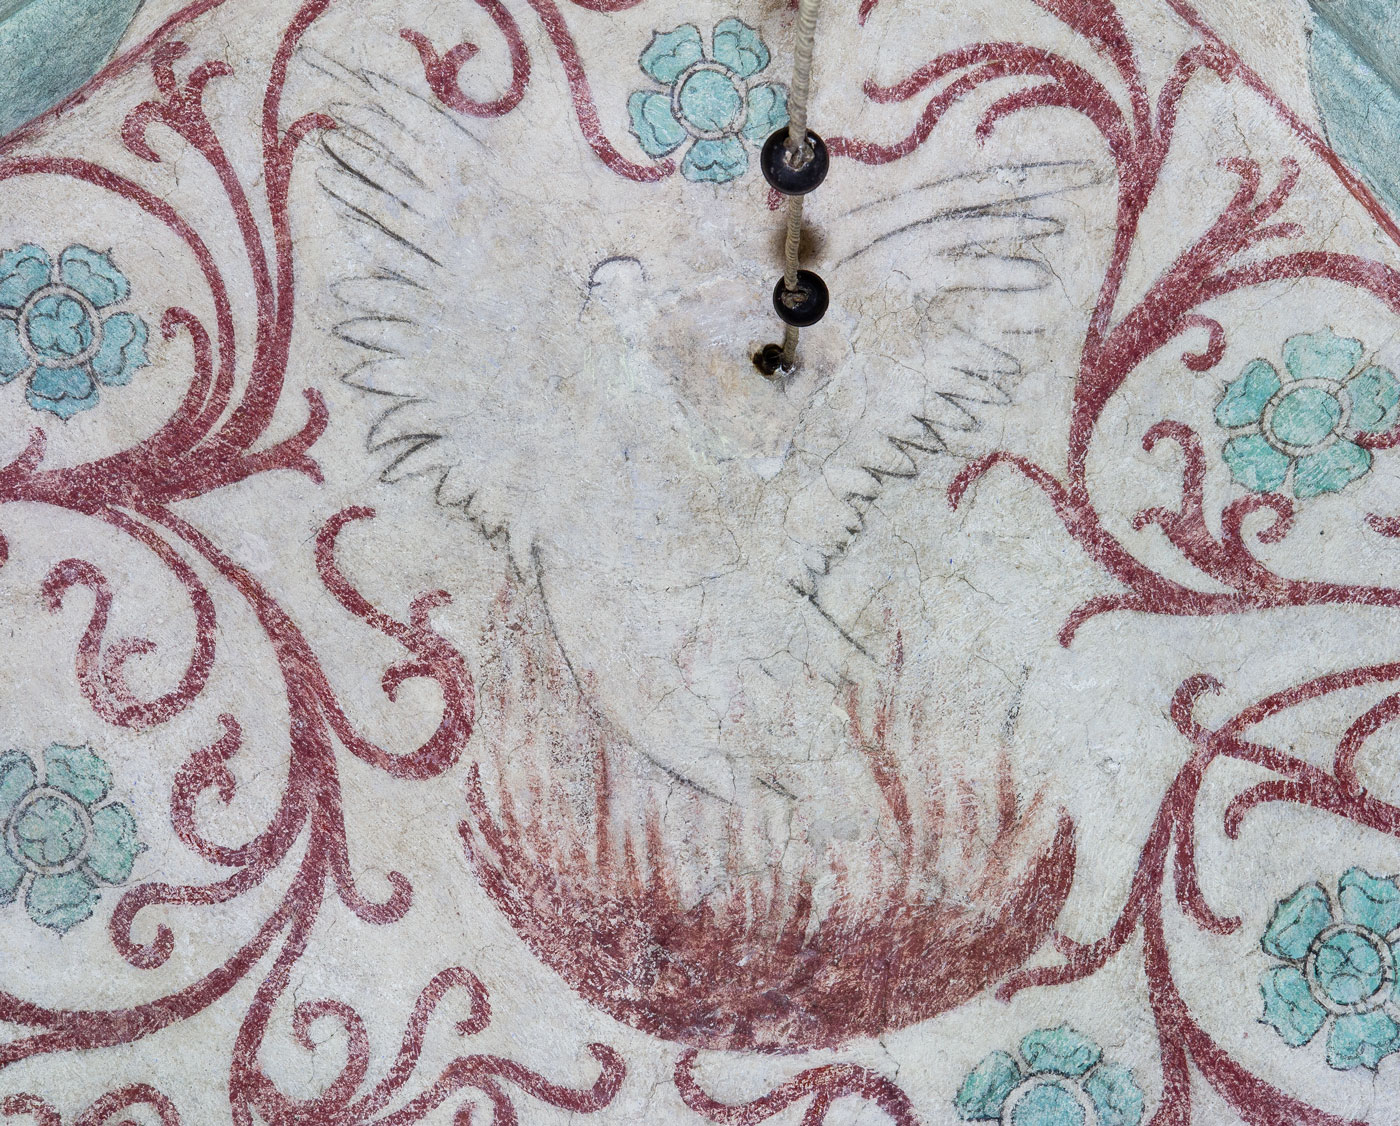 Fågel Fenix, symbol för Kristi död och uppståndelse, liksom även för bland annat kyskheten, hoppet och kyrkan - Lids kyrka